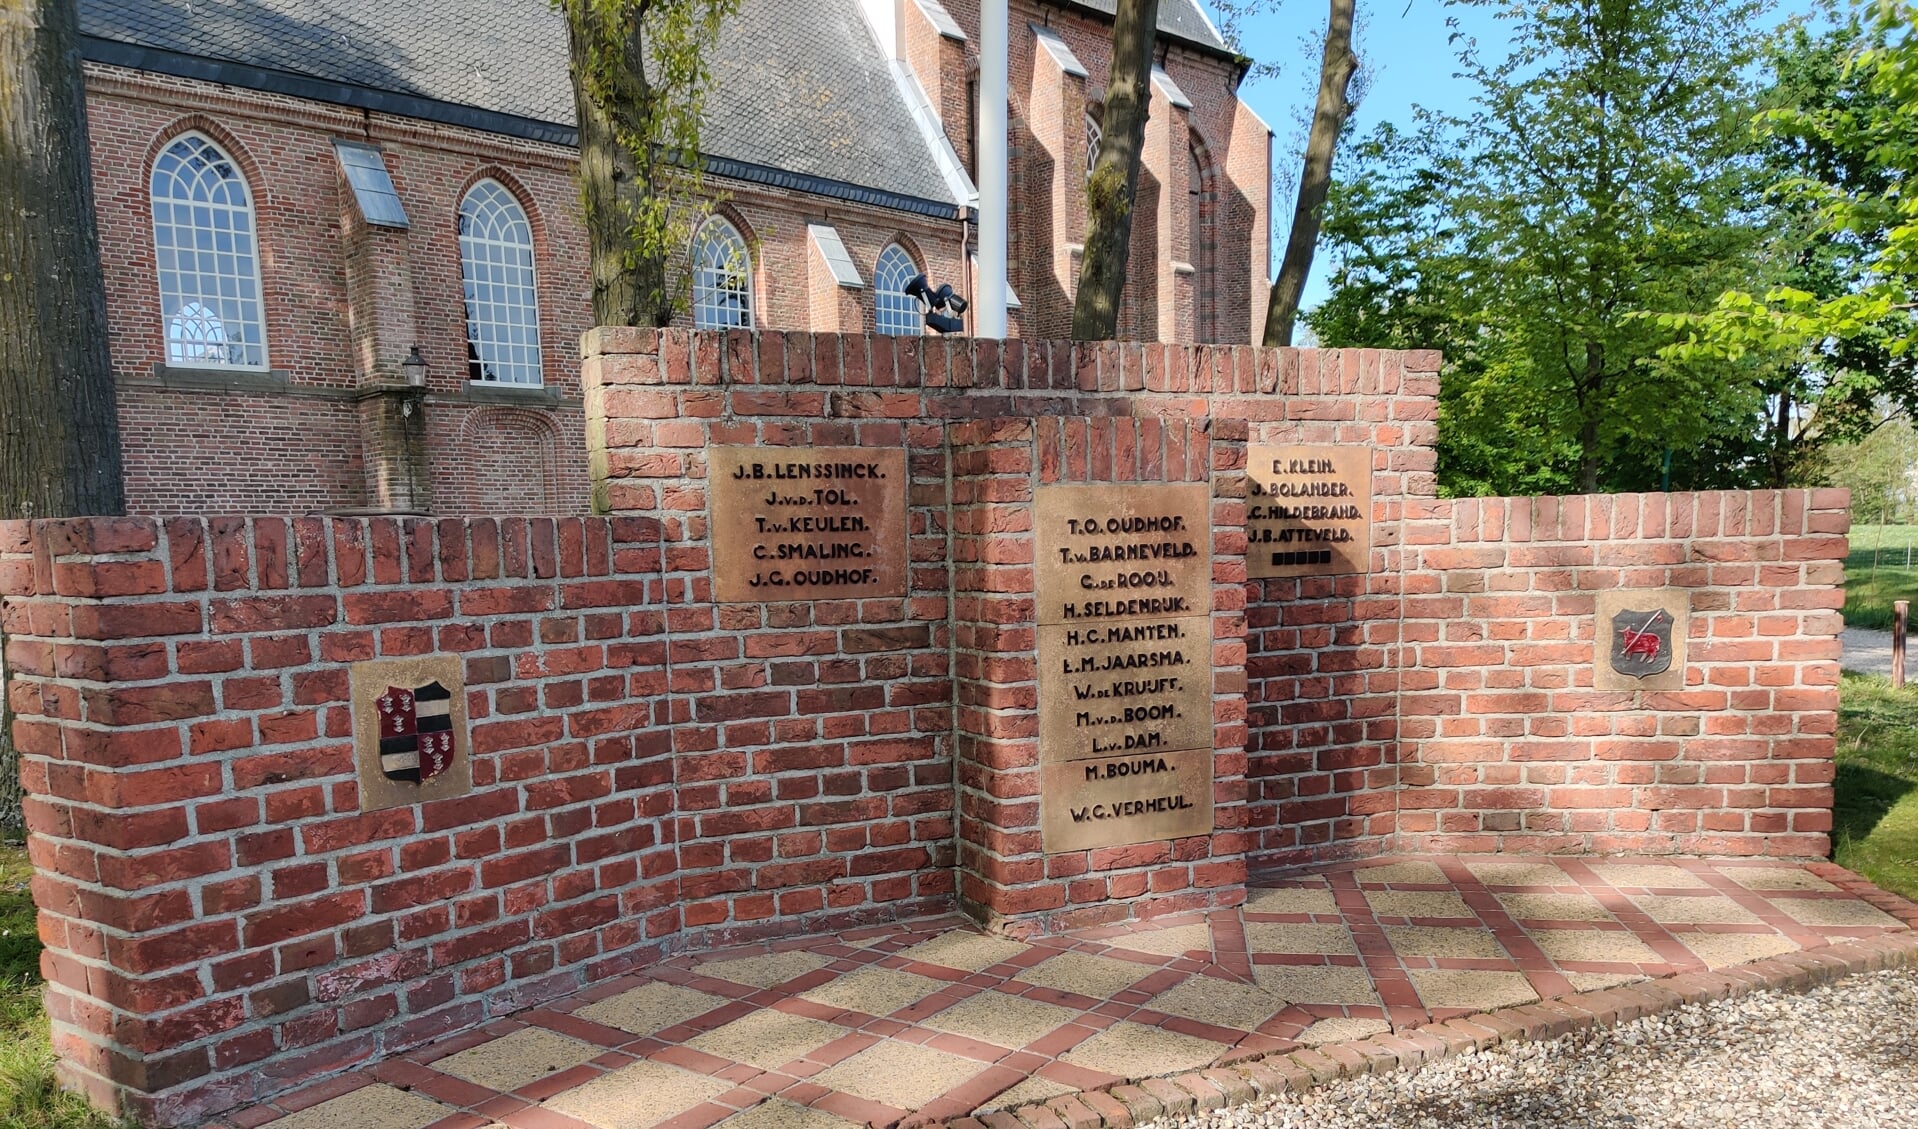 Het oorlogsmonument van Westbroek herdenkt 20 inwoners die zijn omgekomen in de Tweede Wereldoorlog. Negen inwoners stierven op Bevrijdingsdag.